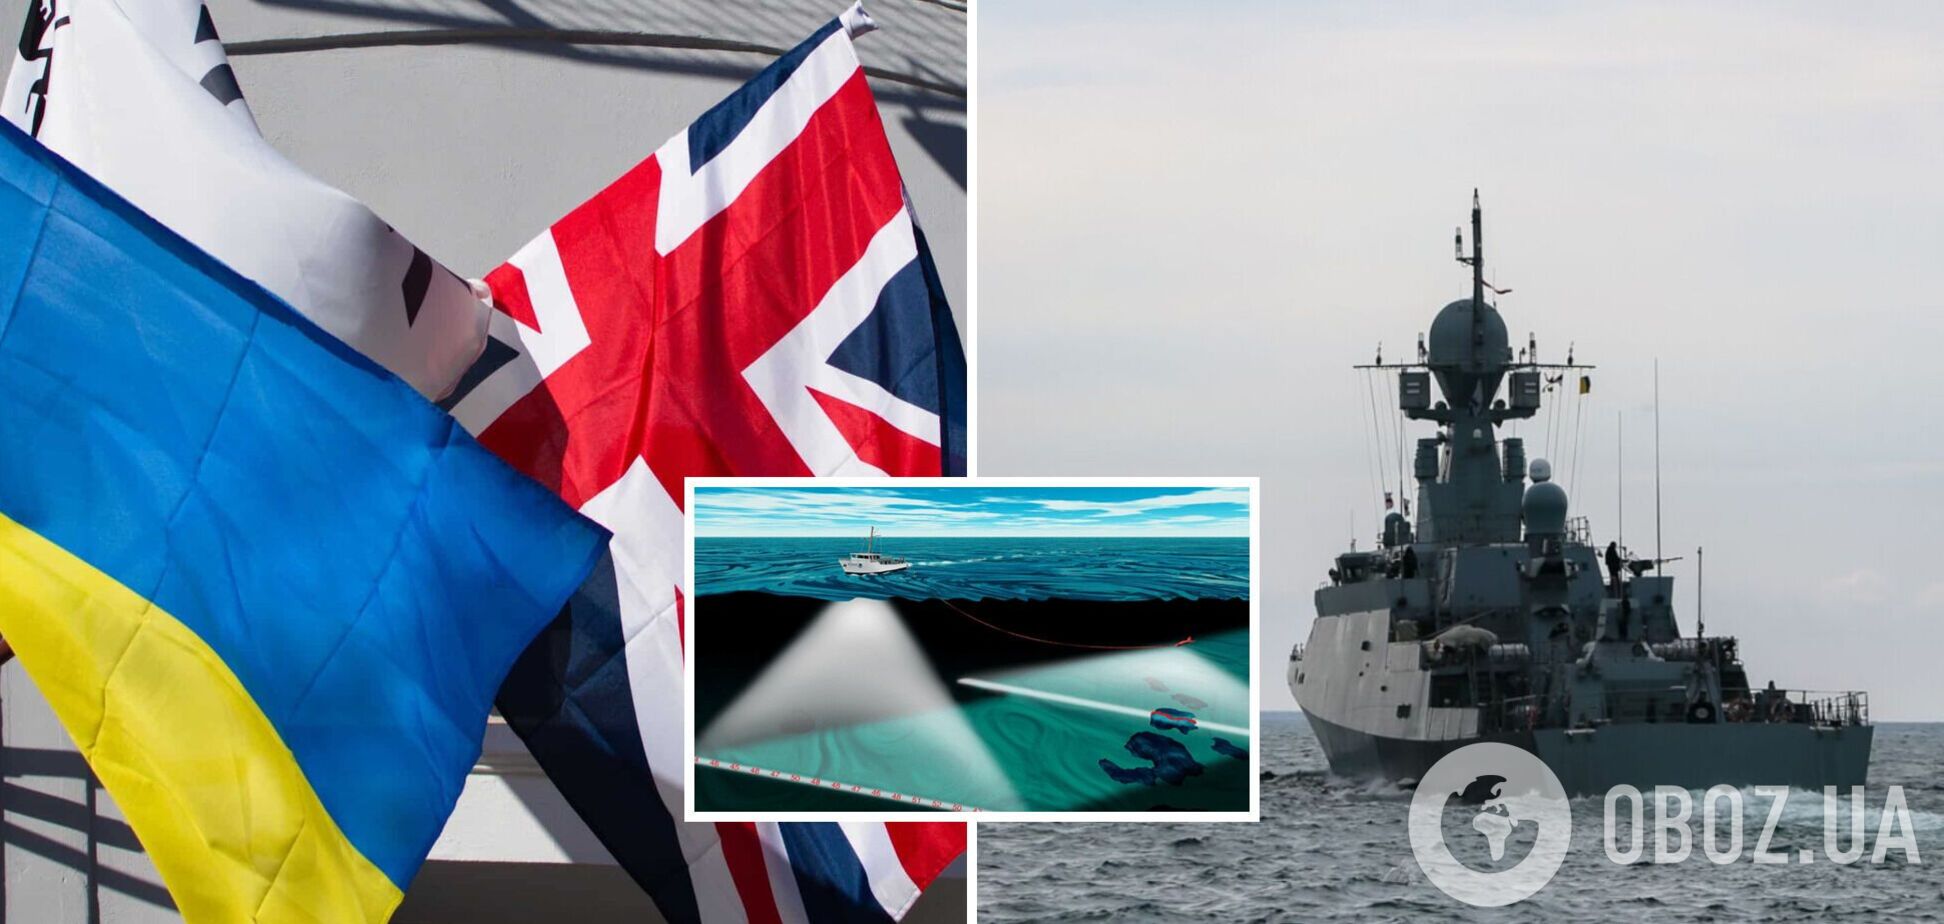 Должны усилить безопасность на море: Британия передала Украине геодезическое оборудование и эхолоты